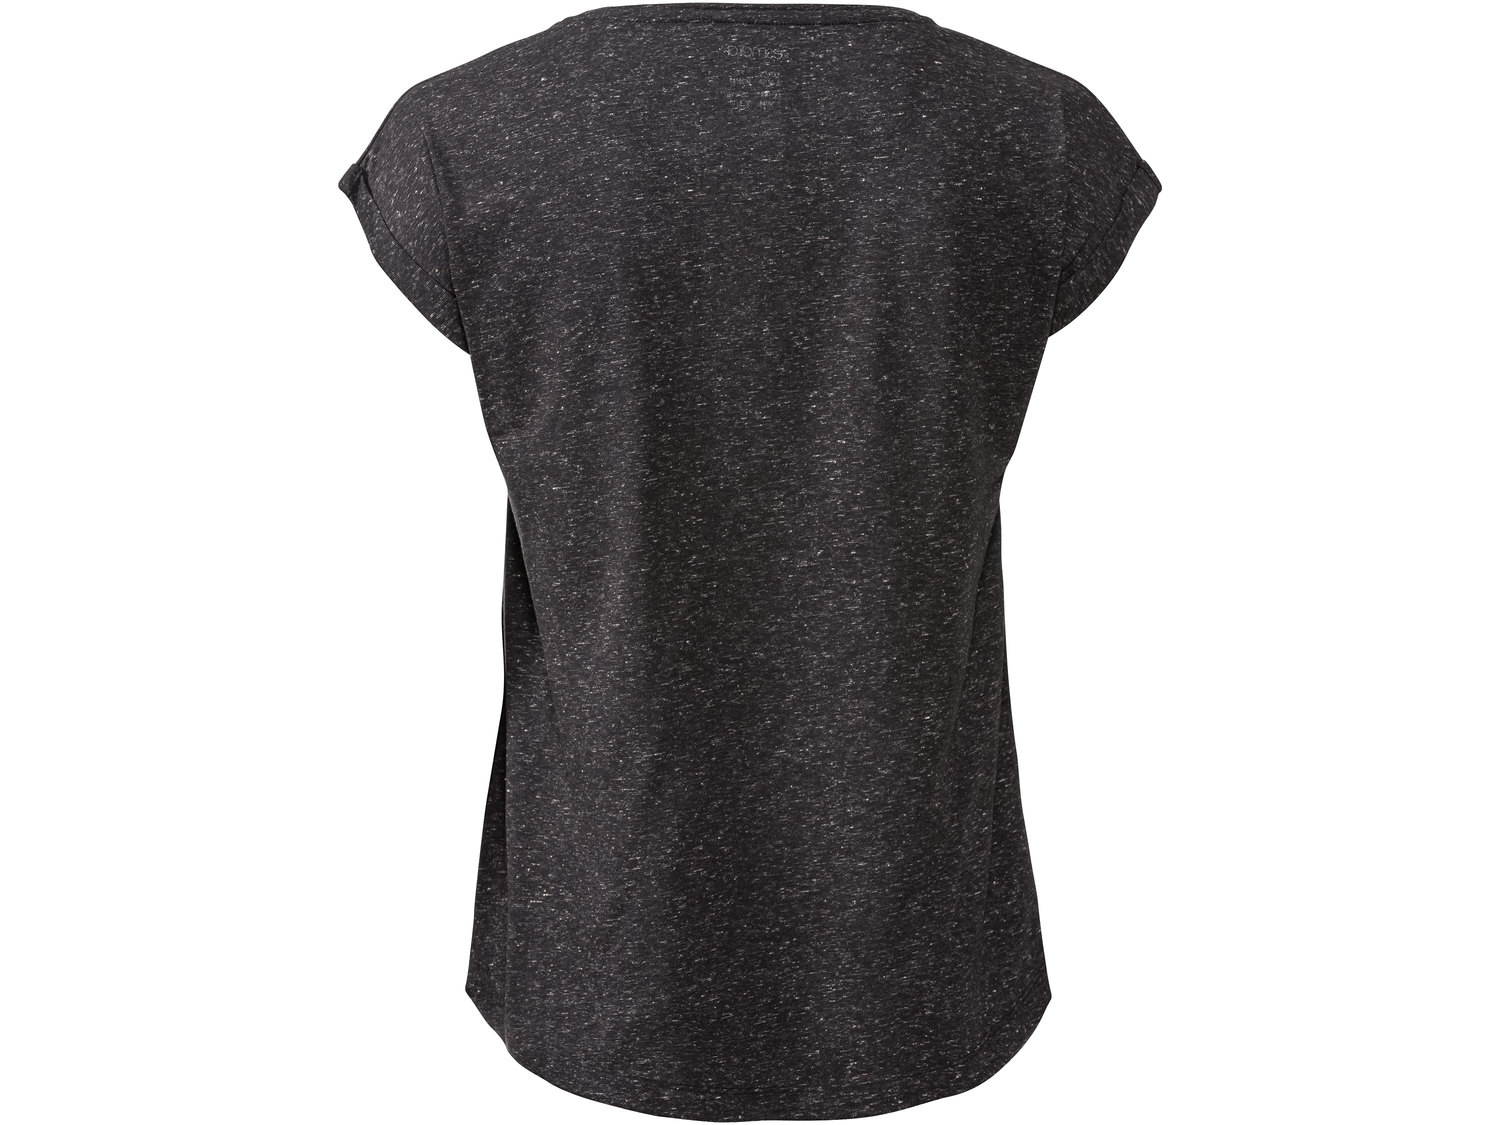 T-shirt Esmara, cena 17,99 PLN 
- rozmiary: XS-L
- Hohenstein bezpieczne dla zdrowia, ...